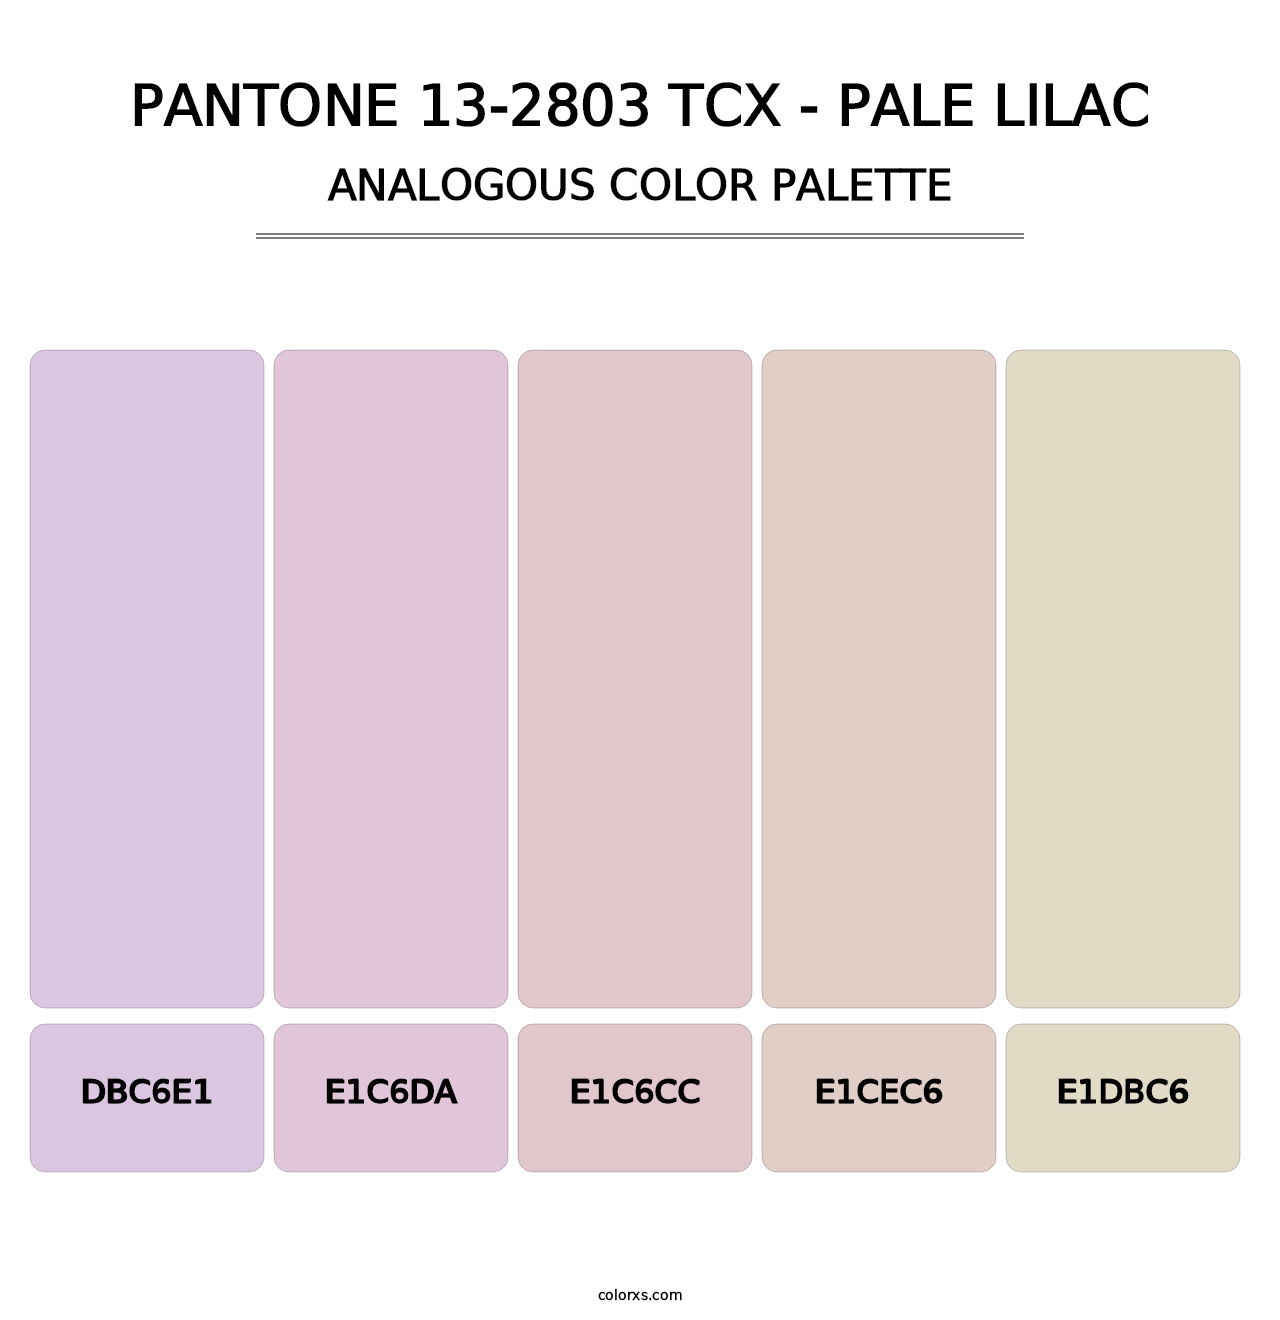 PANTONE 13-2803 TCX - Pale Lilac - Analogous Color Palette